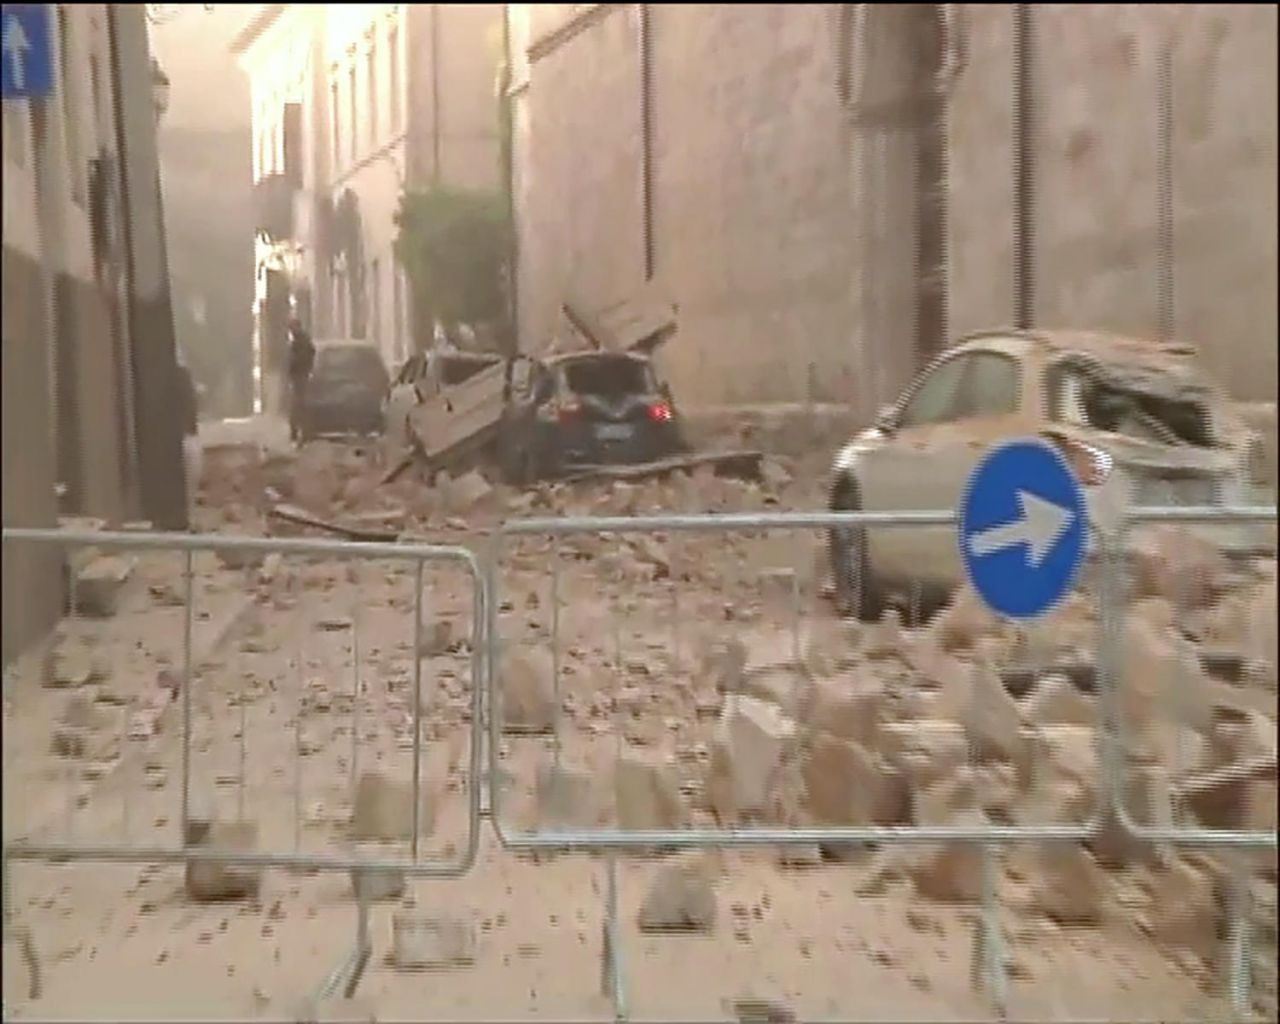 EN IMAGES. Le centre de l'Italie dévasté par un nouveau séisme